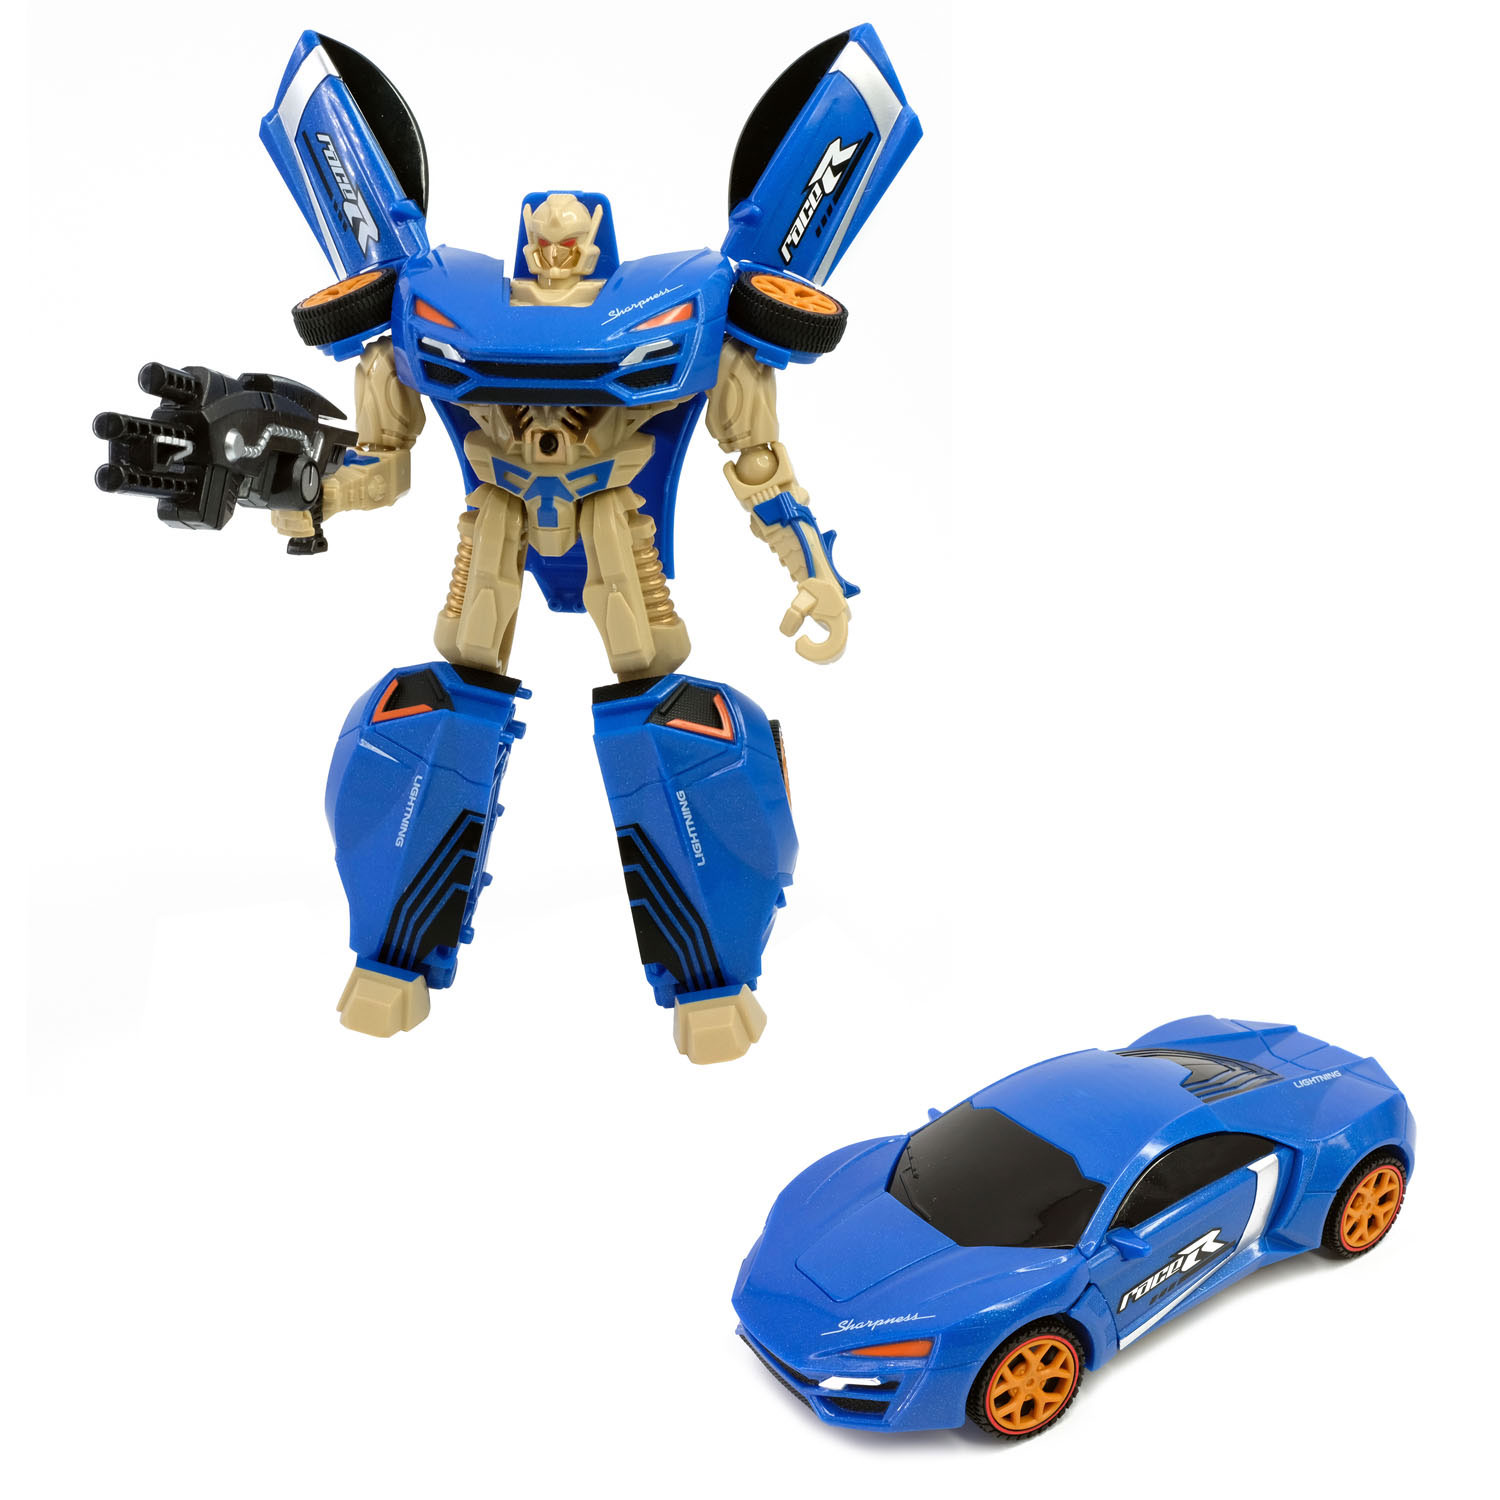 Roboforces Veranderrobot - Raceauto Blauw